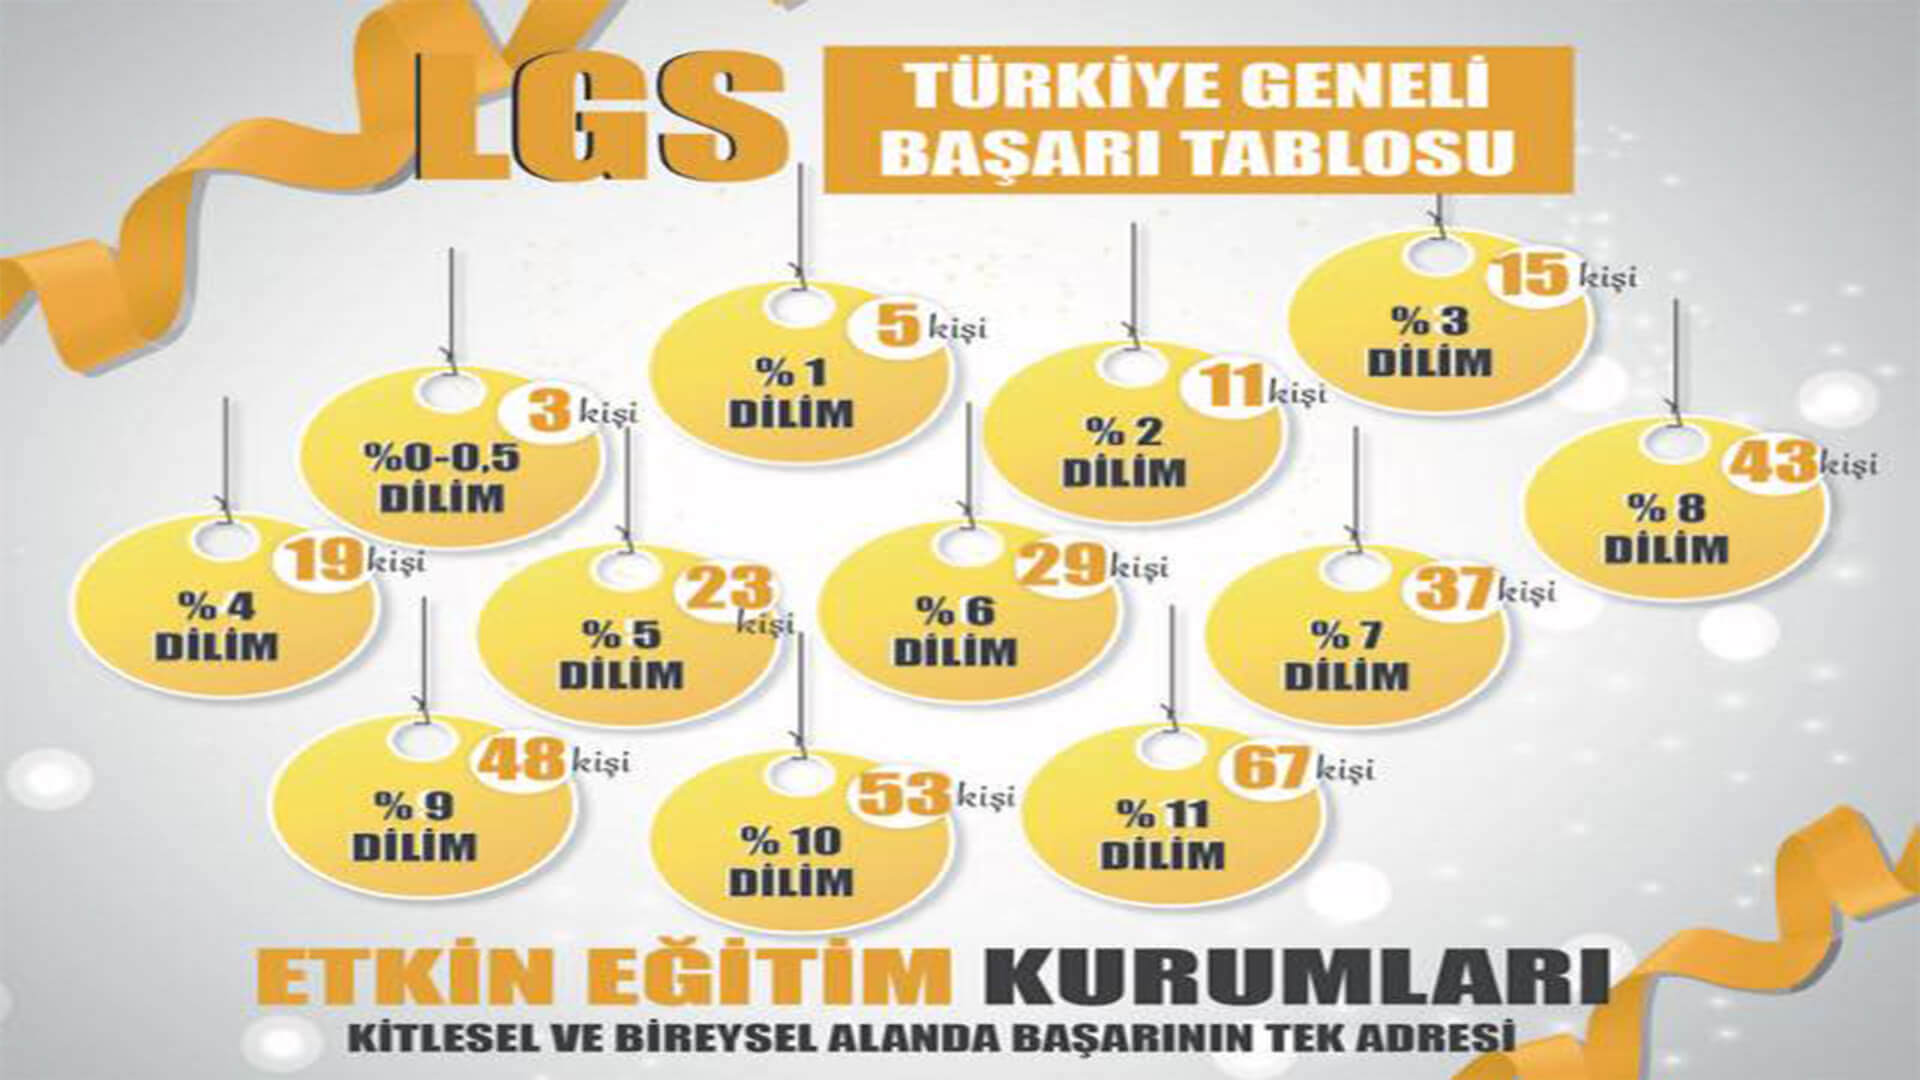 Etkin Kolej | Etkin Eğitim Kurumları LGS Türkiye Geneli Başarı Tablosu